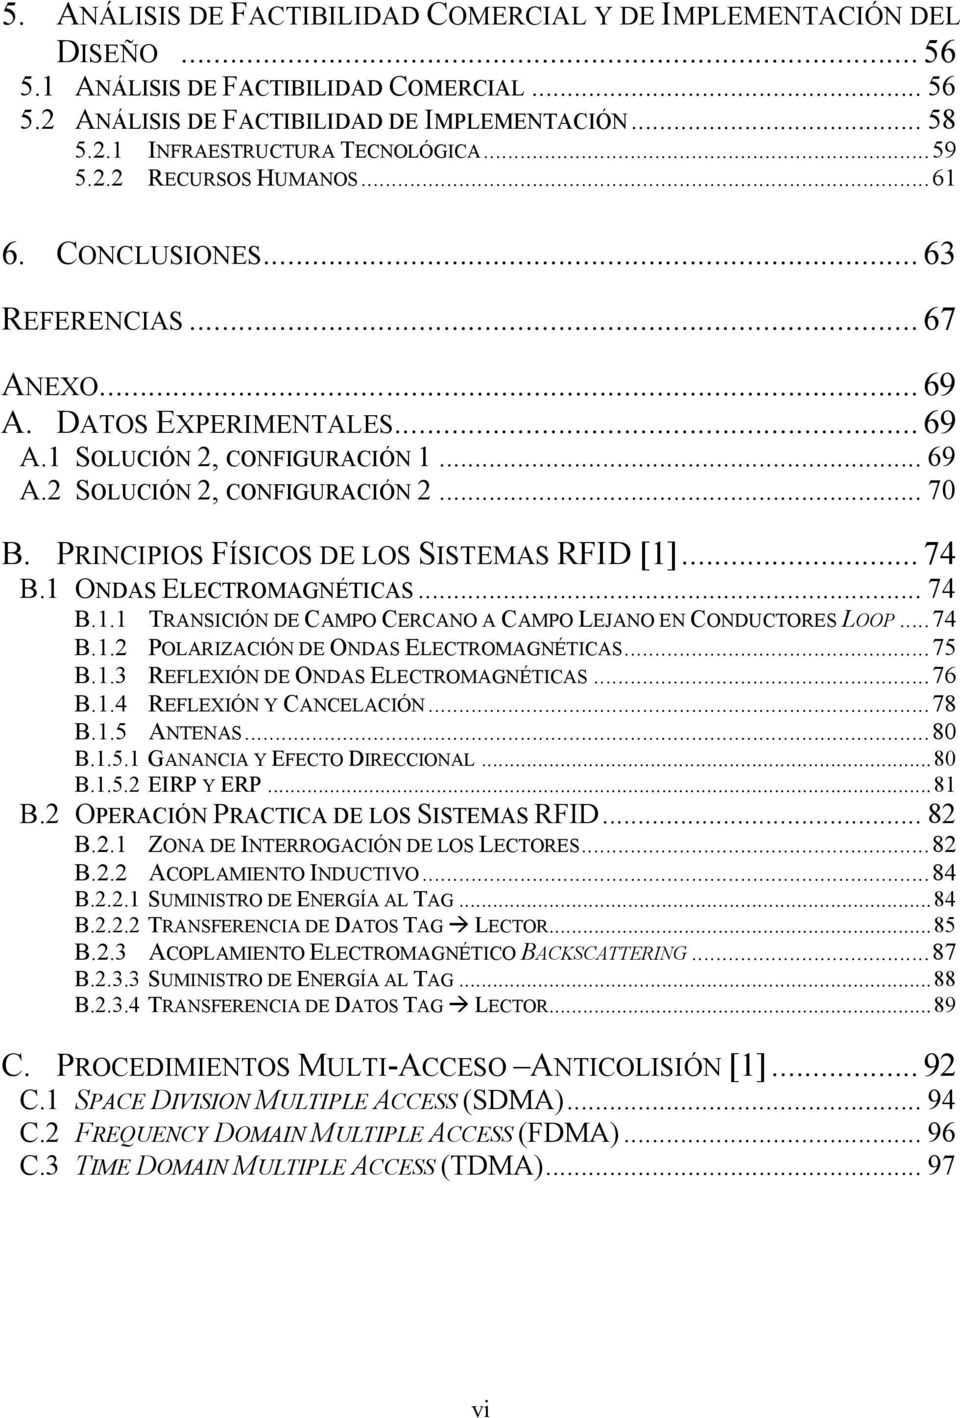 PRINCIPIOS FÍSICOS DE LOS SISTEMAS RFID [1]... 74 B.1 ONDAS ELECTROMAGNÉTICAS... 74 B.1.1 TRANSICIÓN DE CAMPO CERCANO A CAMPO LEJANO EN CONDUCTORES LOOP...74 B.1.2 POLARIZACIÓN DE ONDAS ELECTROMAGNÉTICAS.